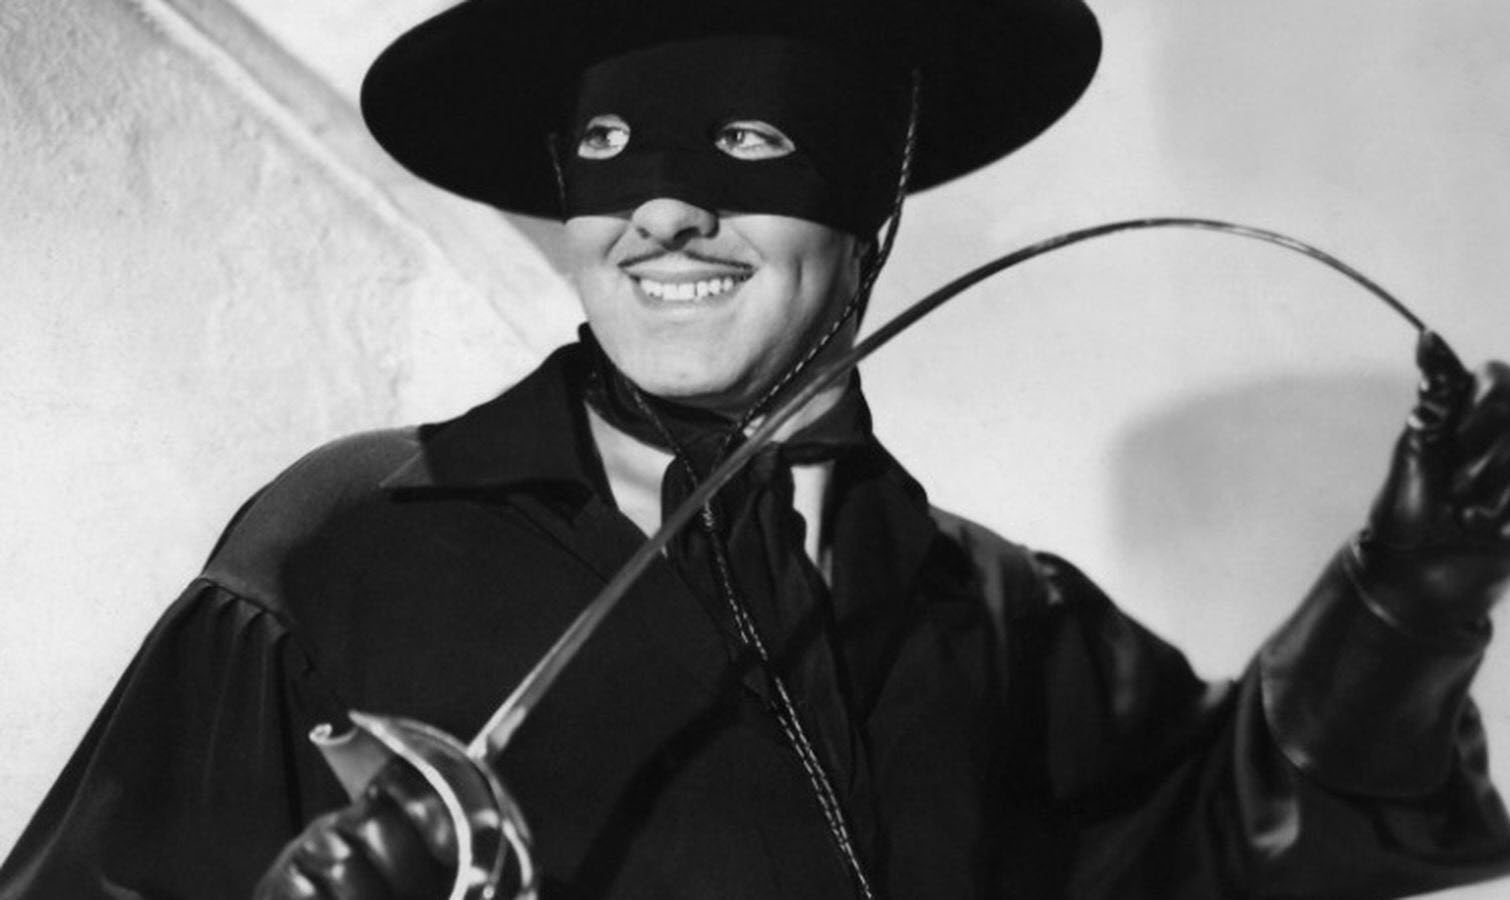 Tyrone Power dans le rôle de Zorro : habillé en noir, un masque noir lui couvrant le haut du visage à l'exception des yeux, un chapeau noir, une chemise noire et des gants noirs, souriant et tenant entre les mains une épée qu'il recourbe.